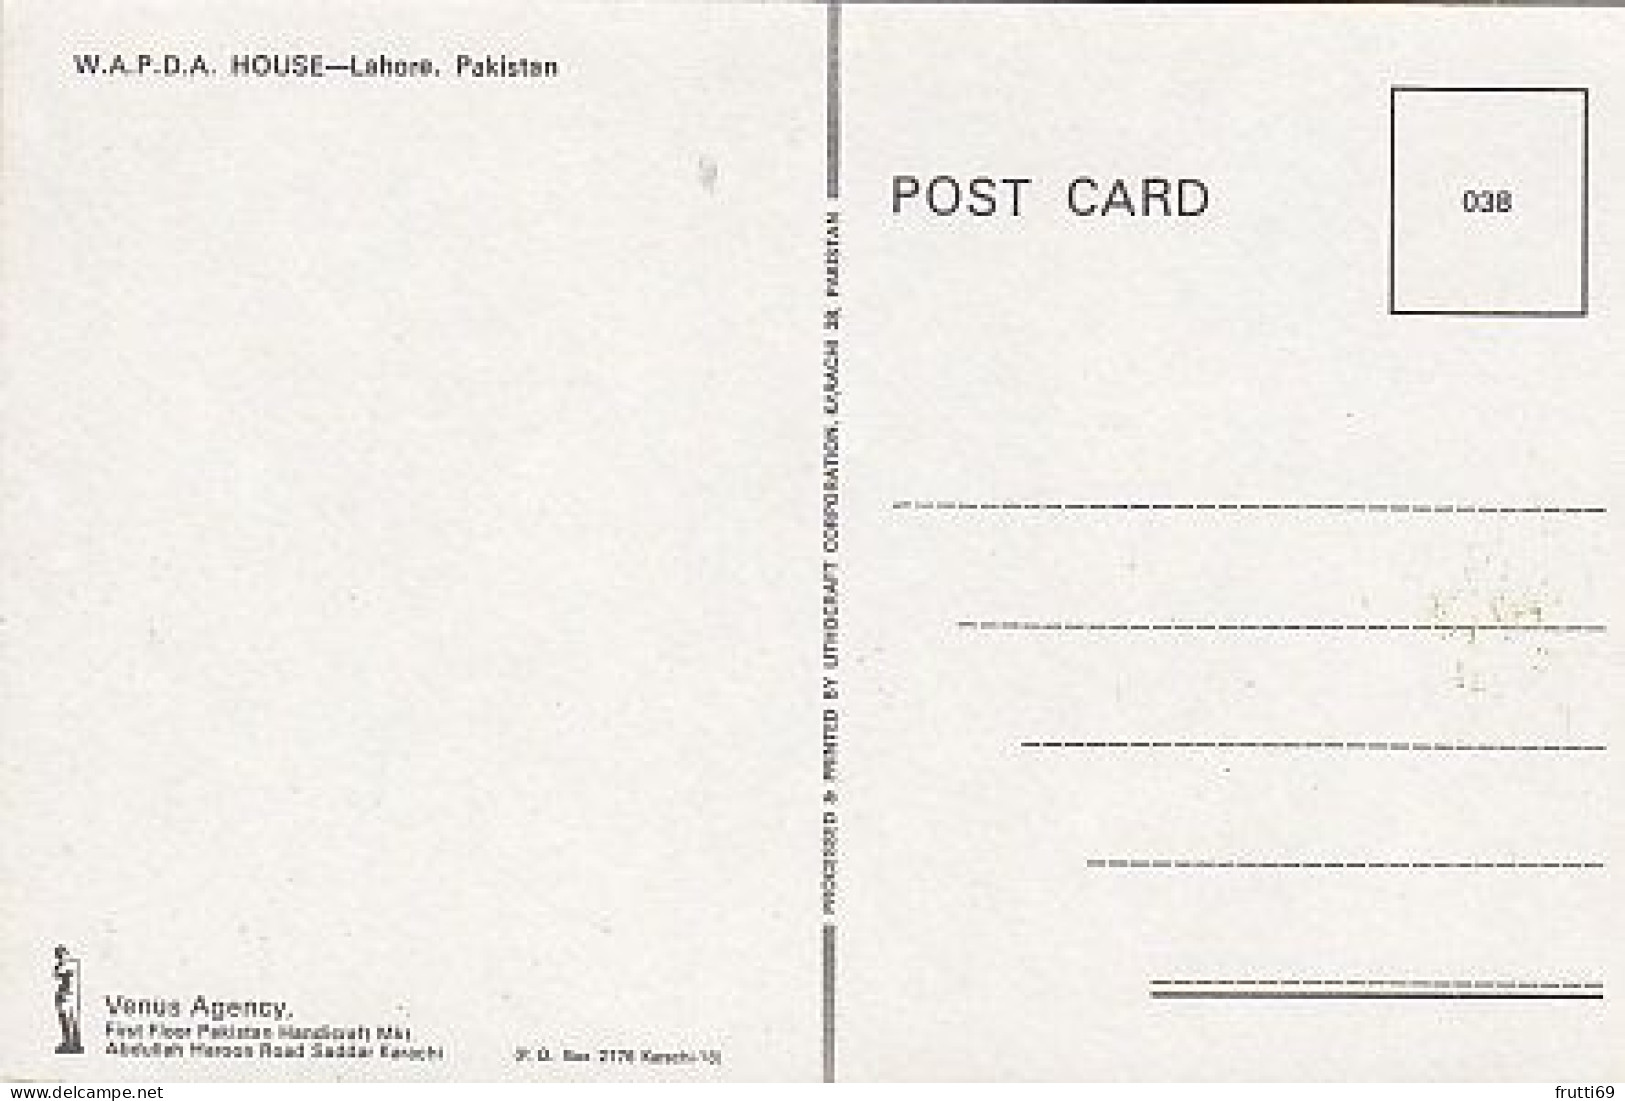 AK 185580 PAKISTAN - Lahore - W.A.P.D.A House - Pakistan